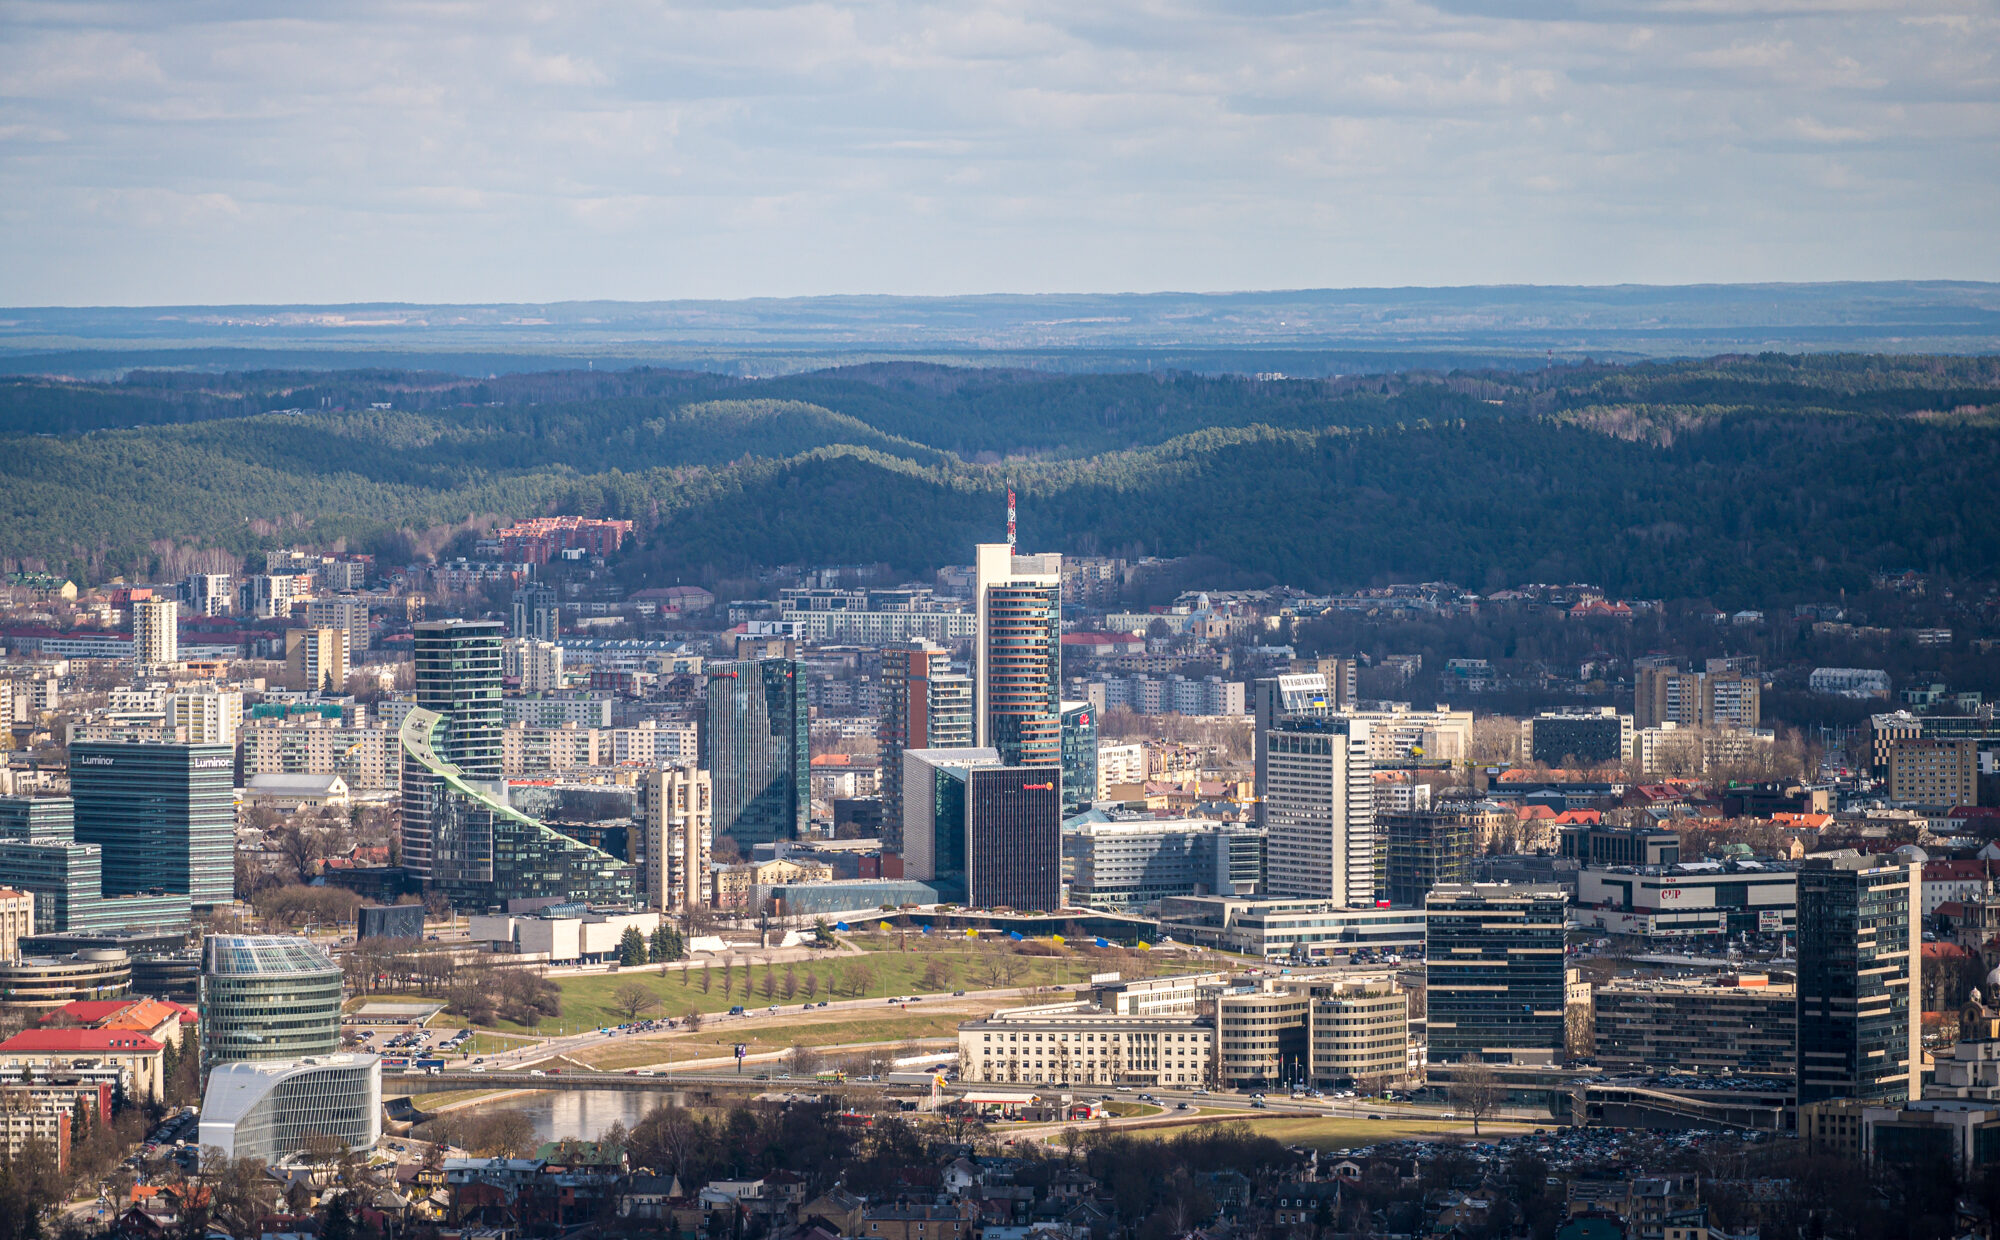 Tarp 50 didžiausių Baltijos šalių įmonių yra 27 Lietuvos įmonės – MadeinVilnius.lt